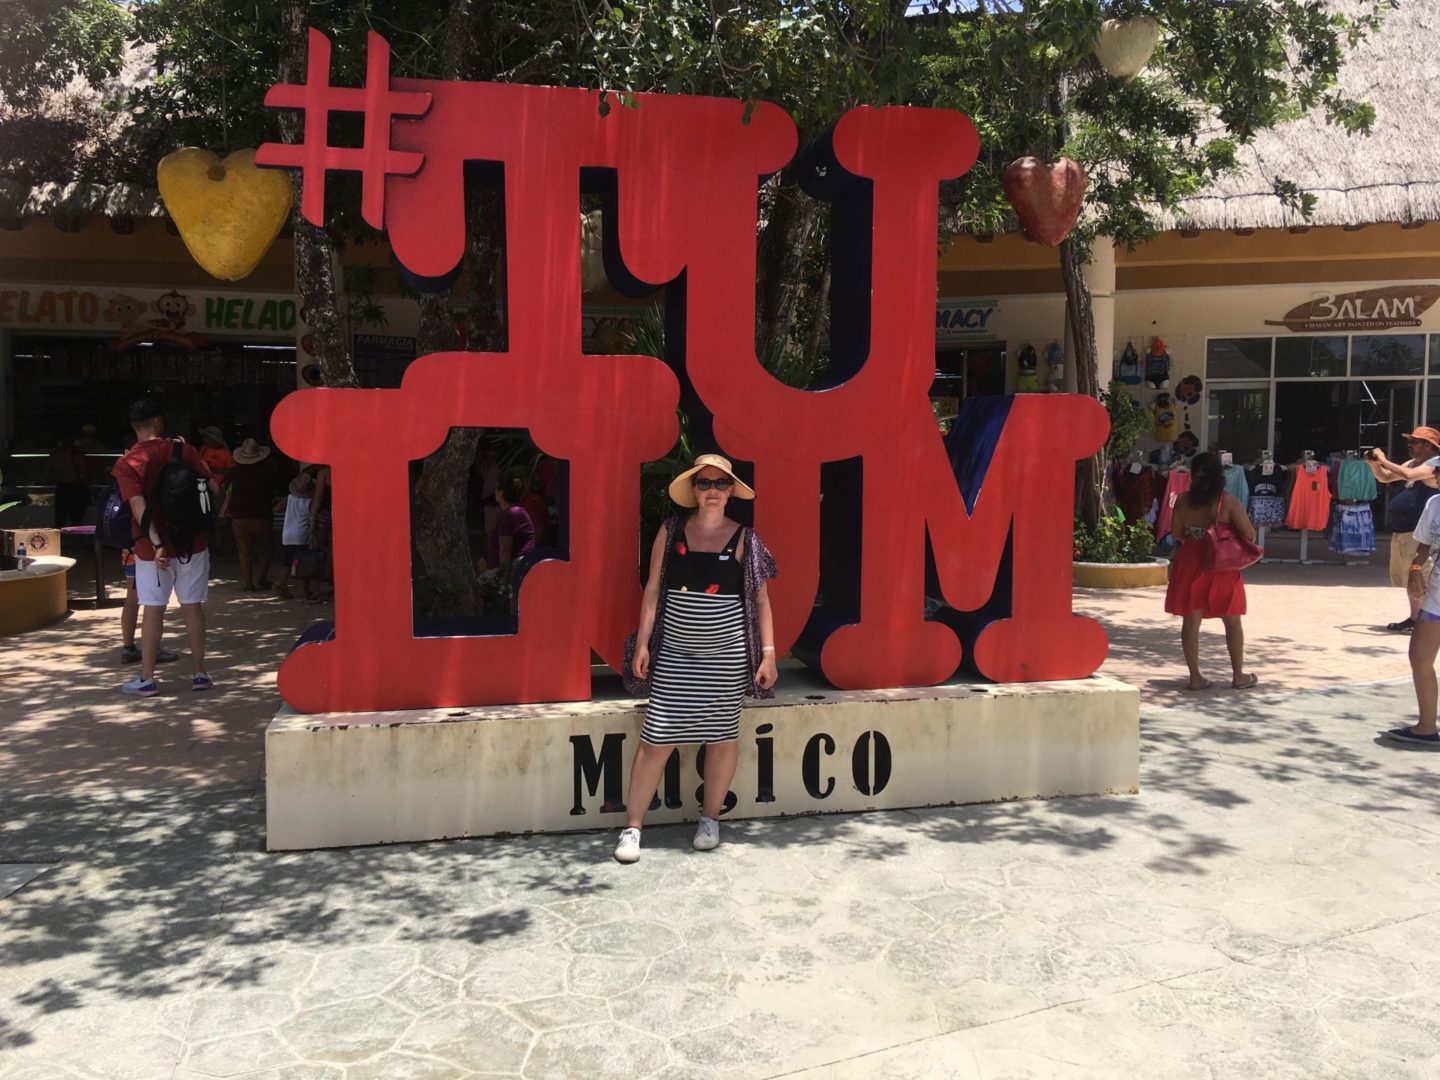 Cancun - Tulum